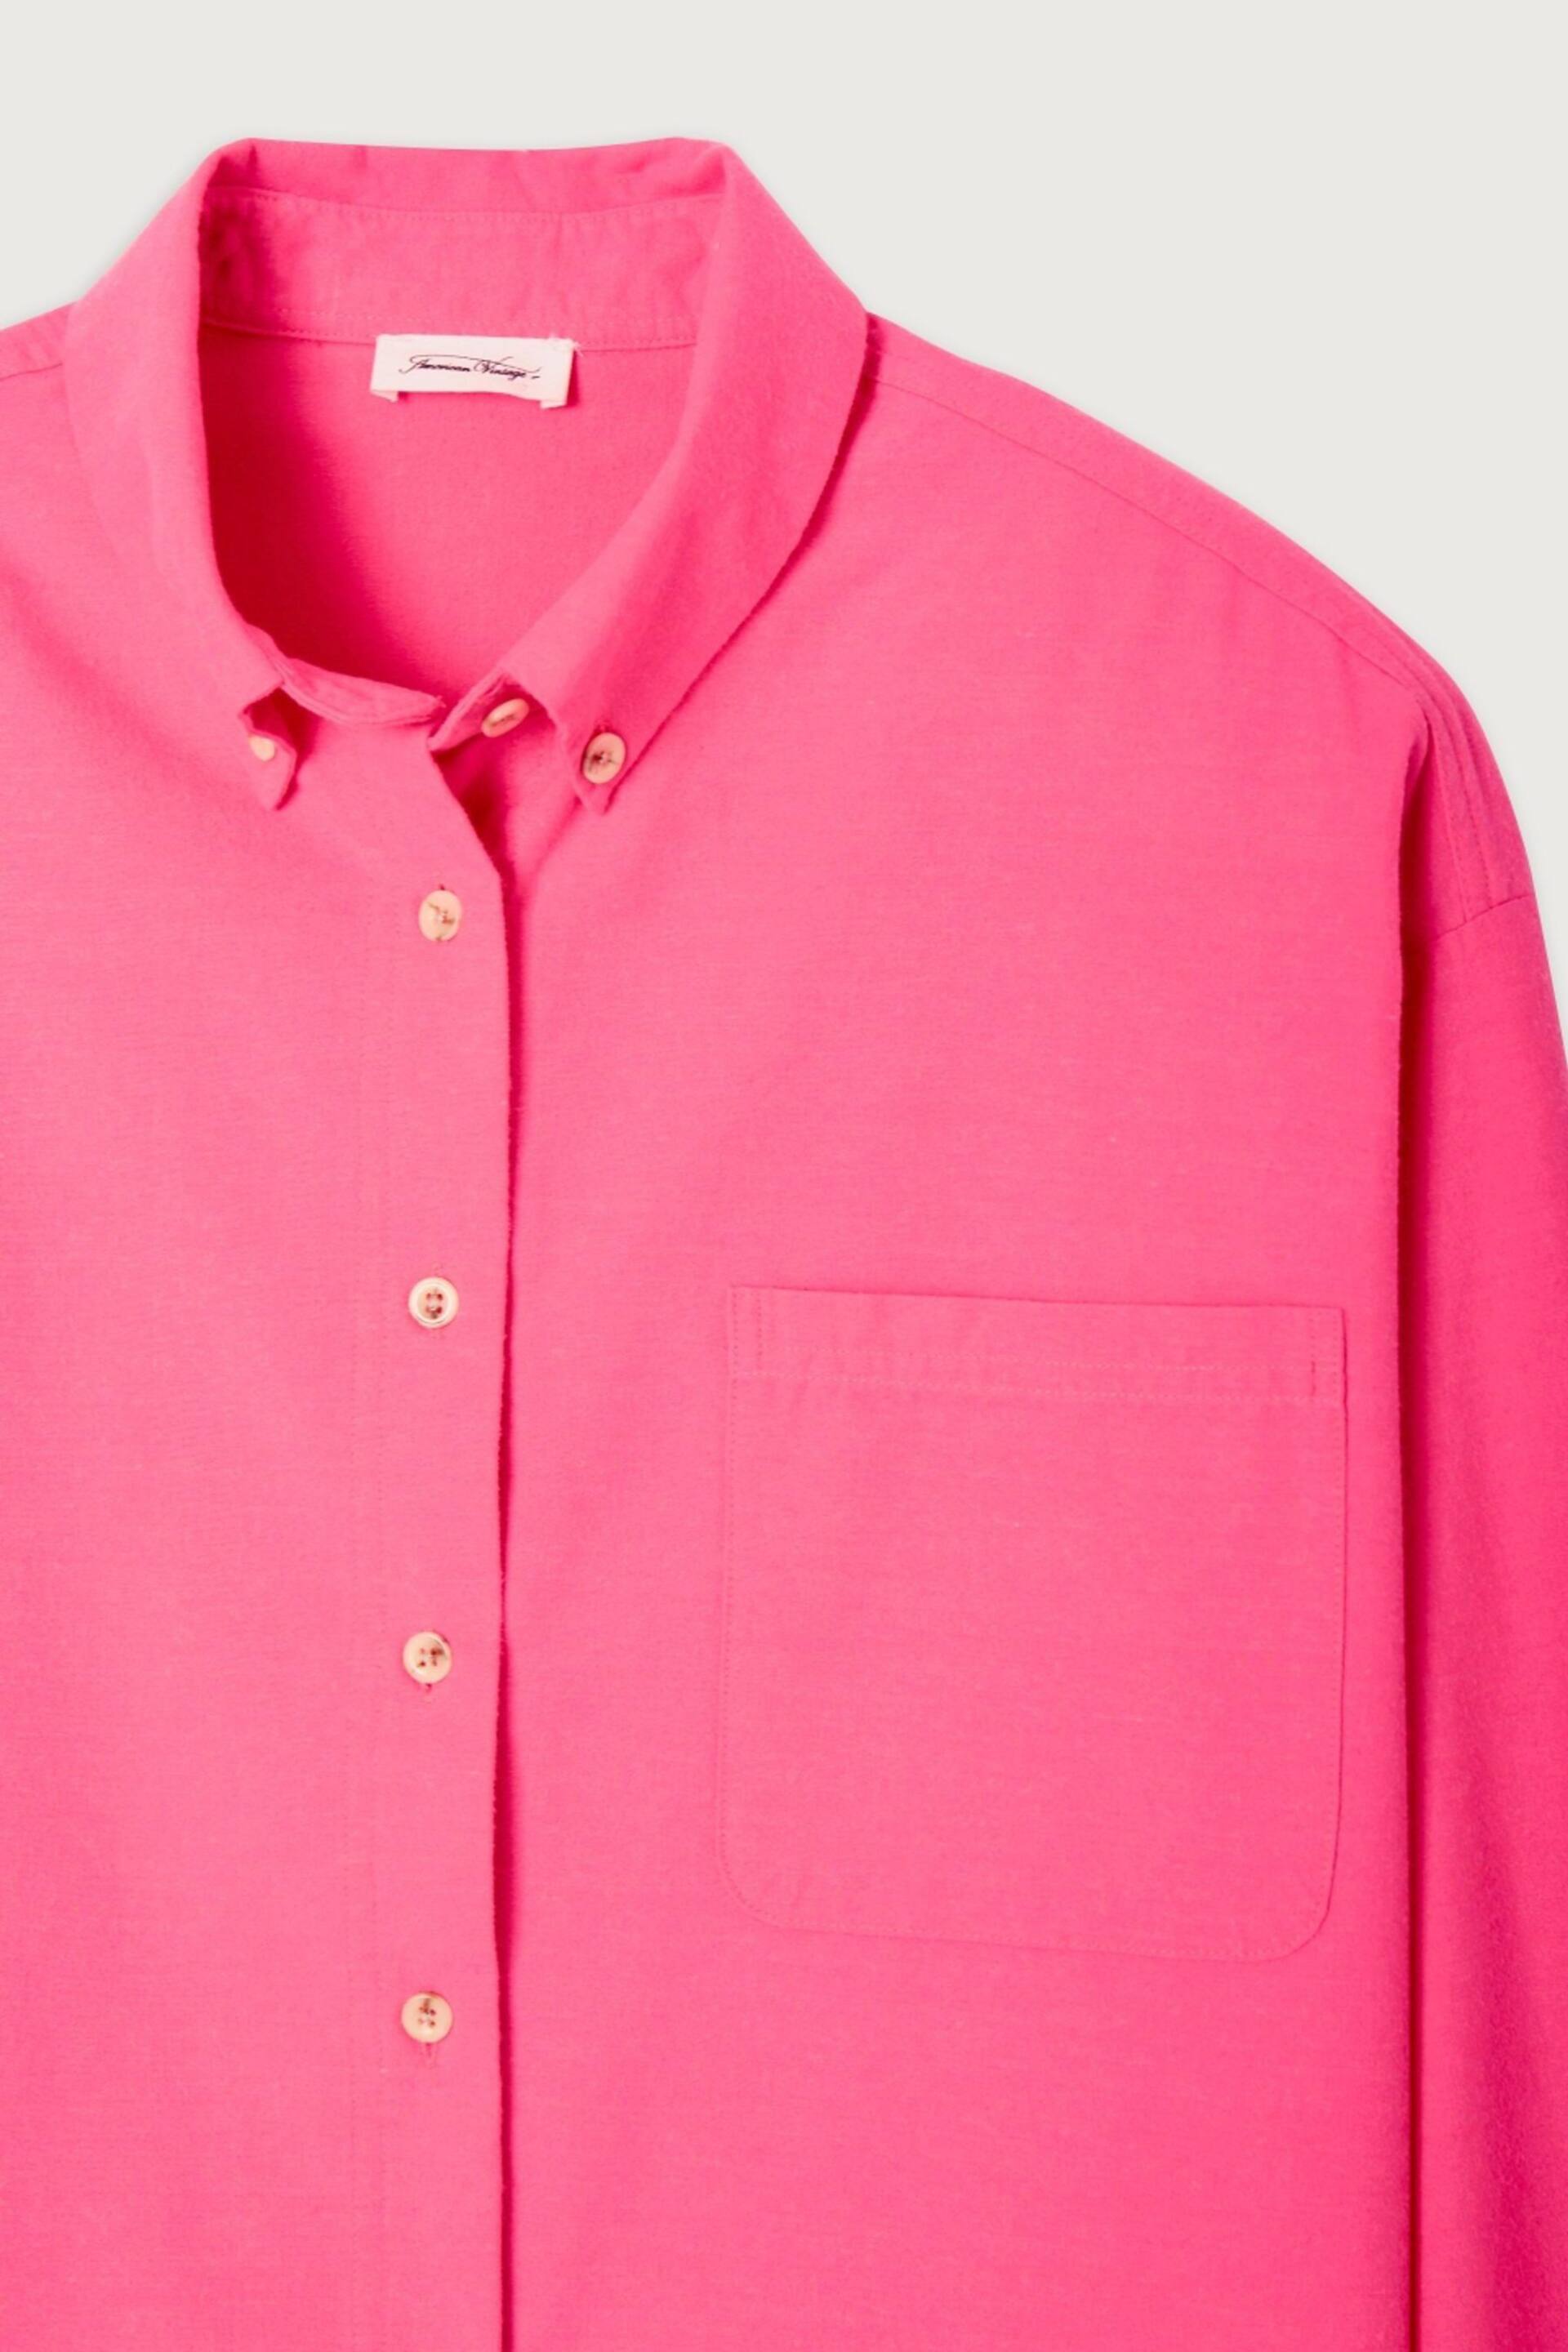 American Vintage Pink Dakota Shirt - Image 5 of 5